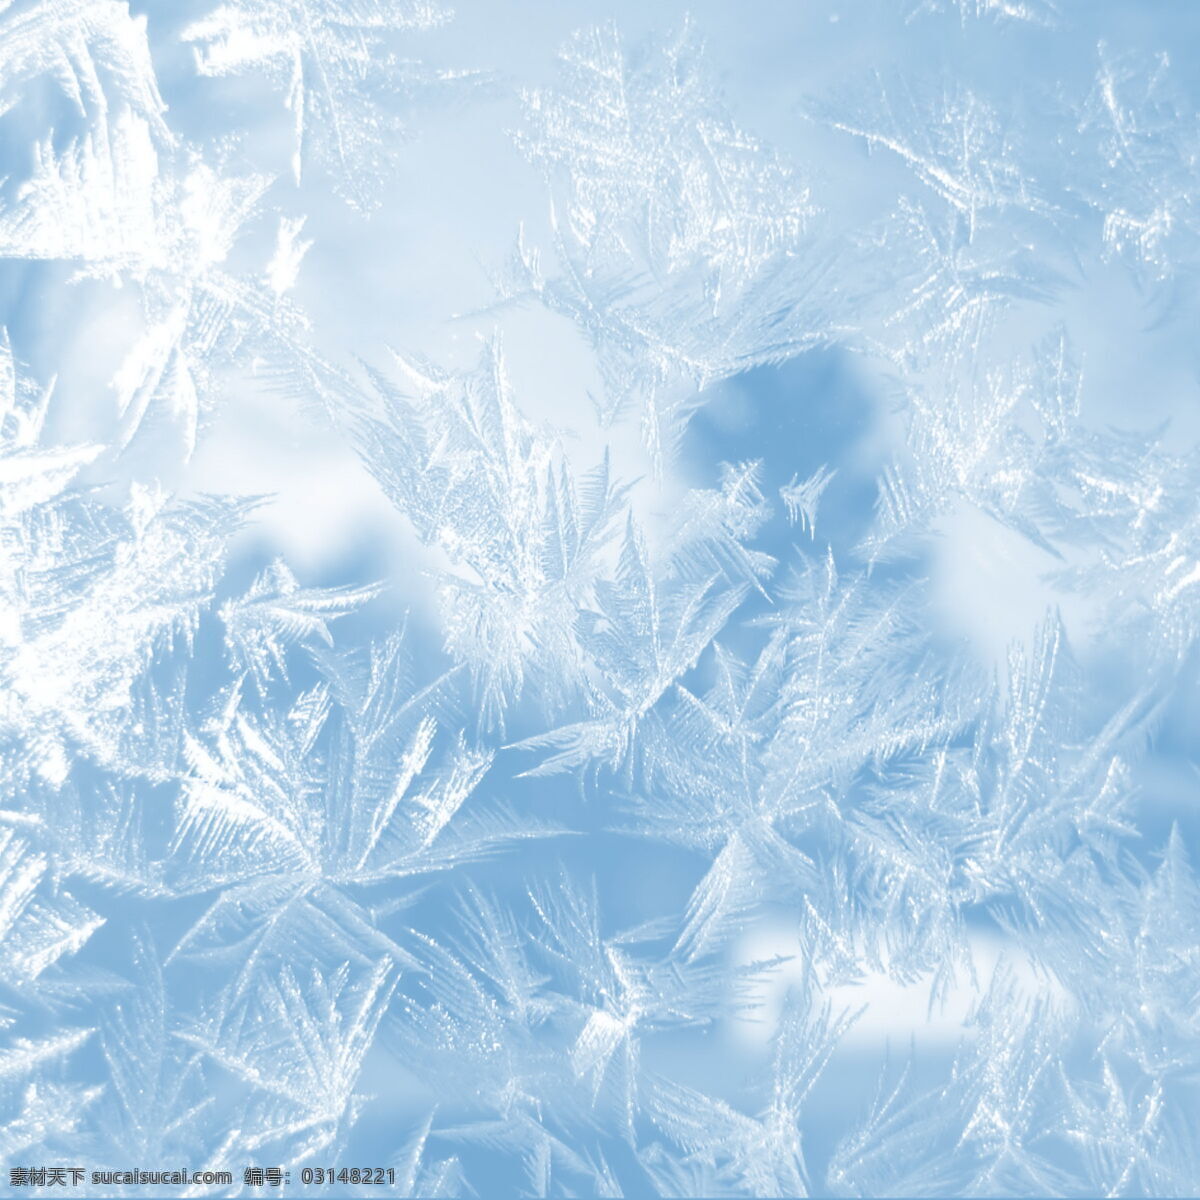 冰花 冰晶 冰霜 冰粒 冰凌 雪 冬雪 树枝 松枝 背景底纹 底纹边框